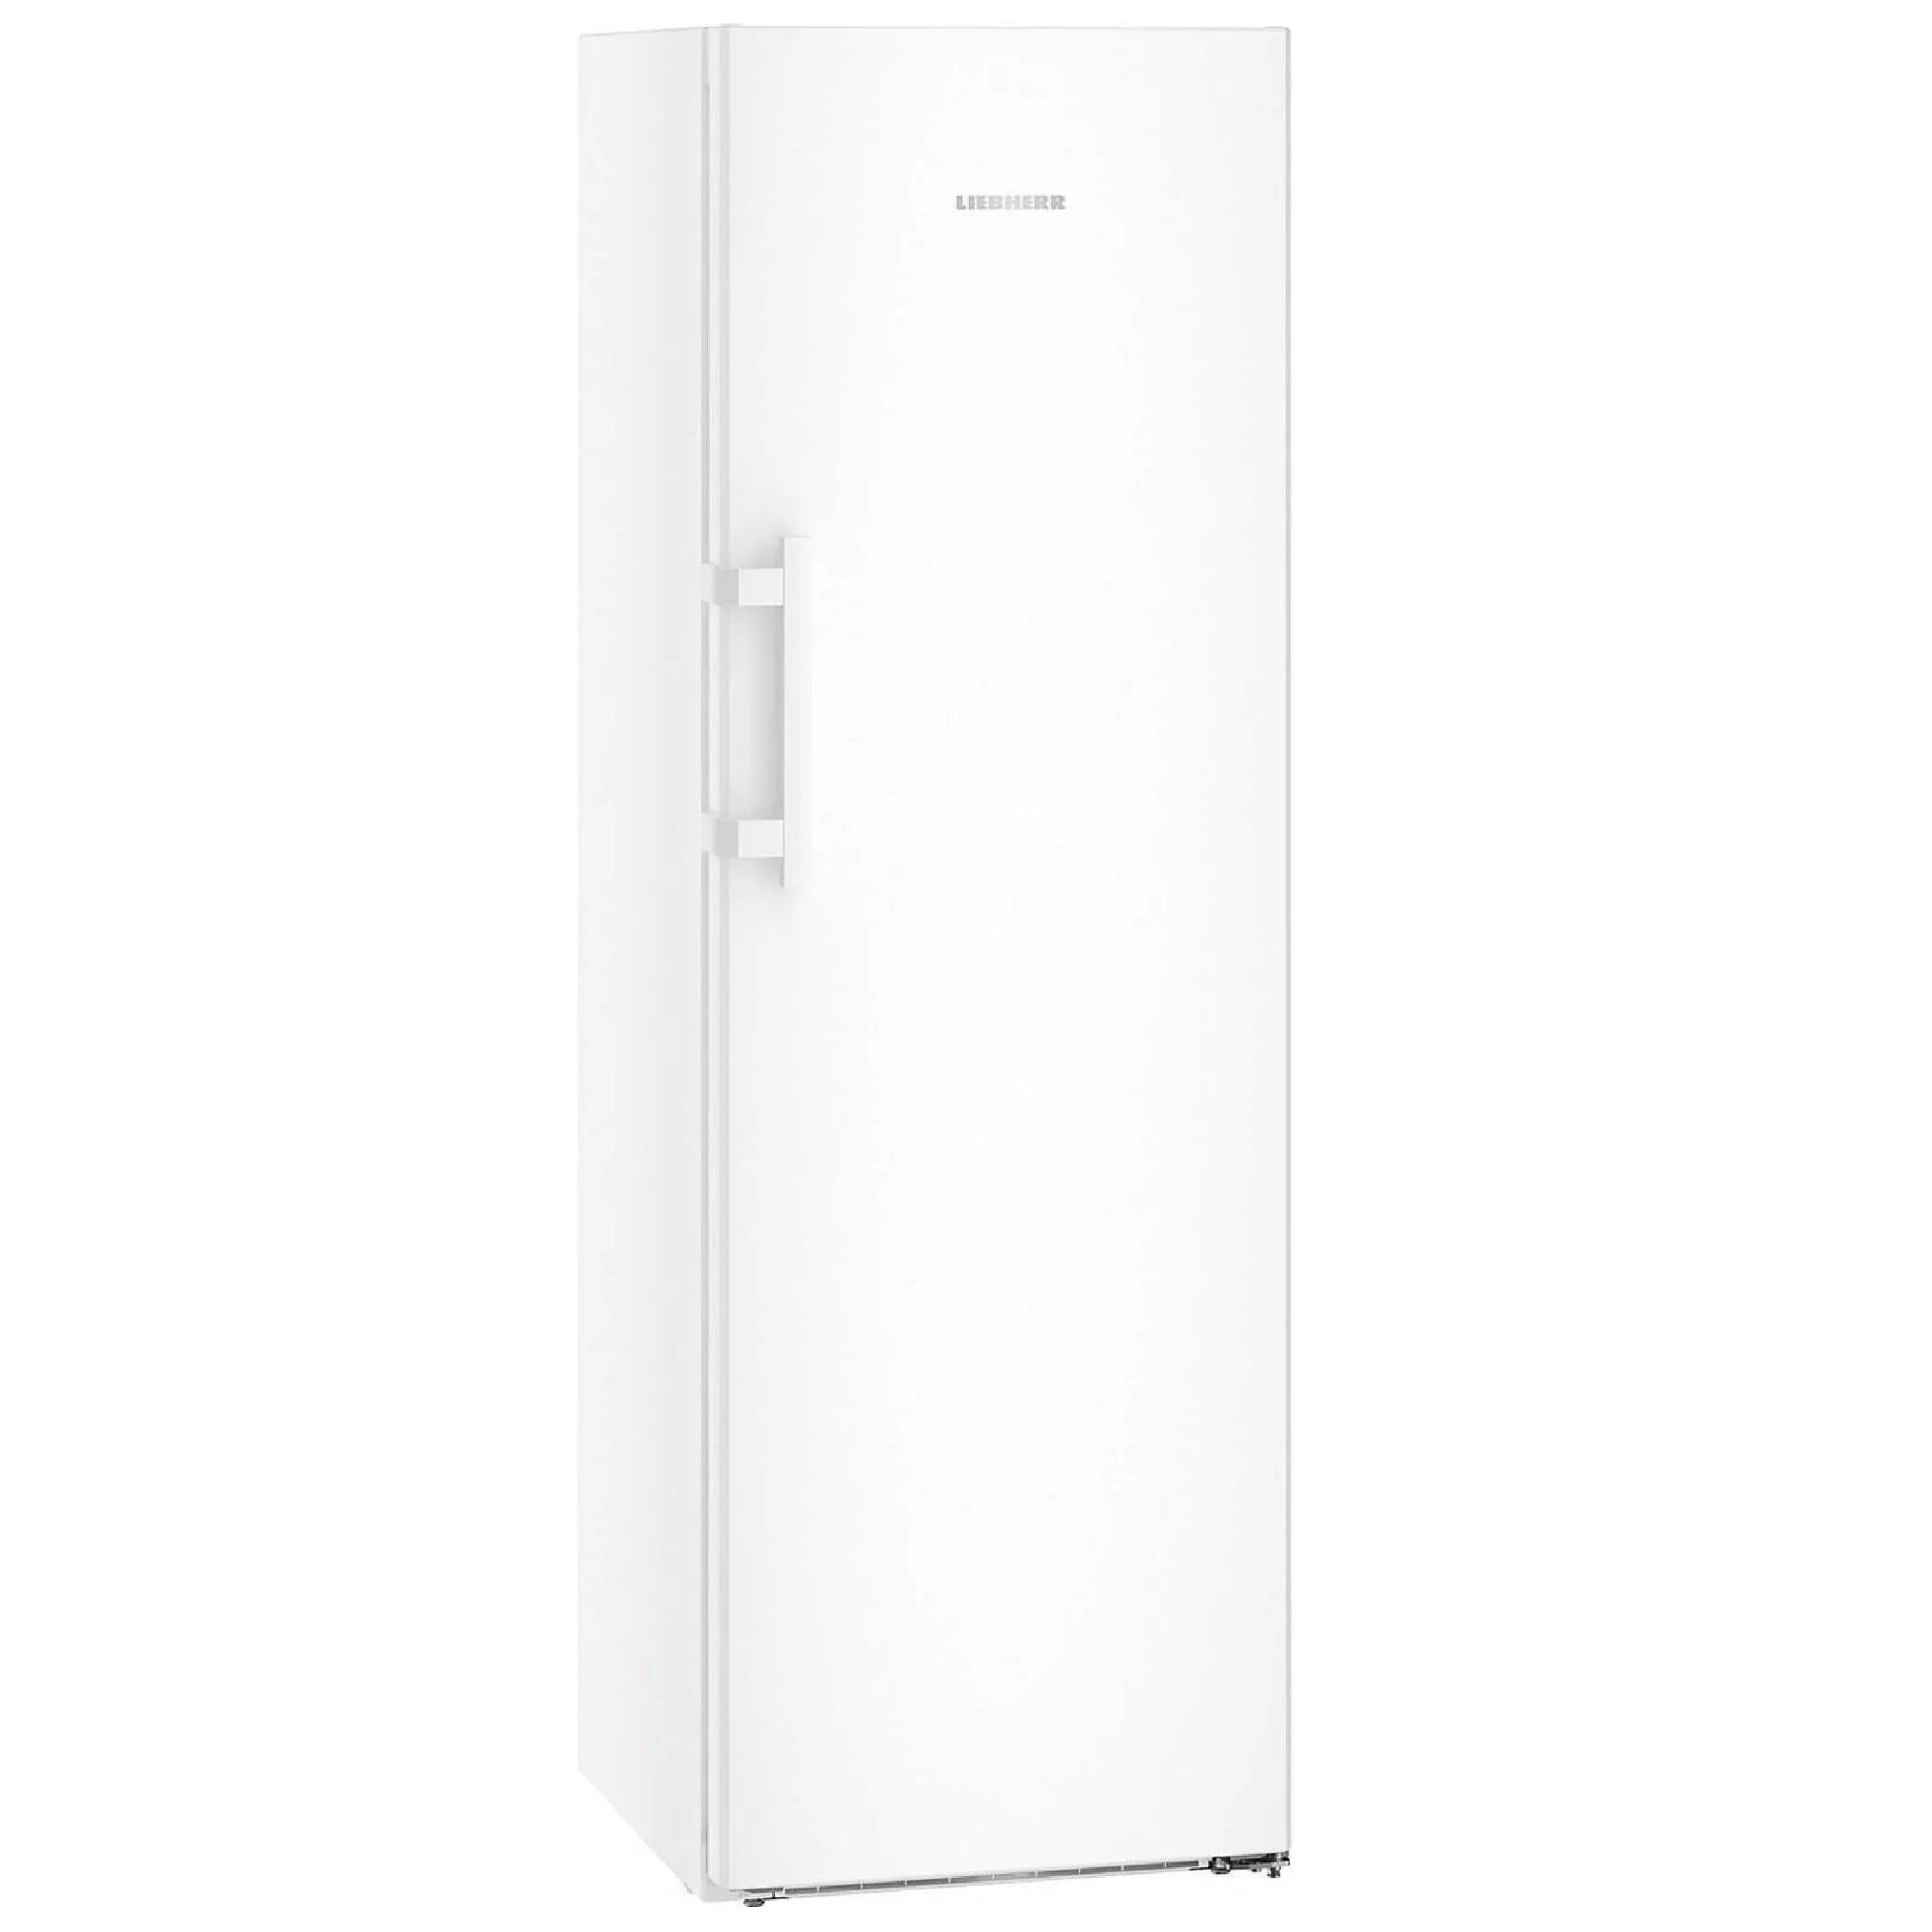 Холодильник Liebherr k 4330. Морозильная камера Либхер GNP 4355. Liebherr b 2830 холодильник. Васко ру холодильники